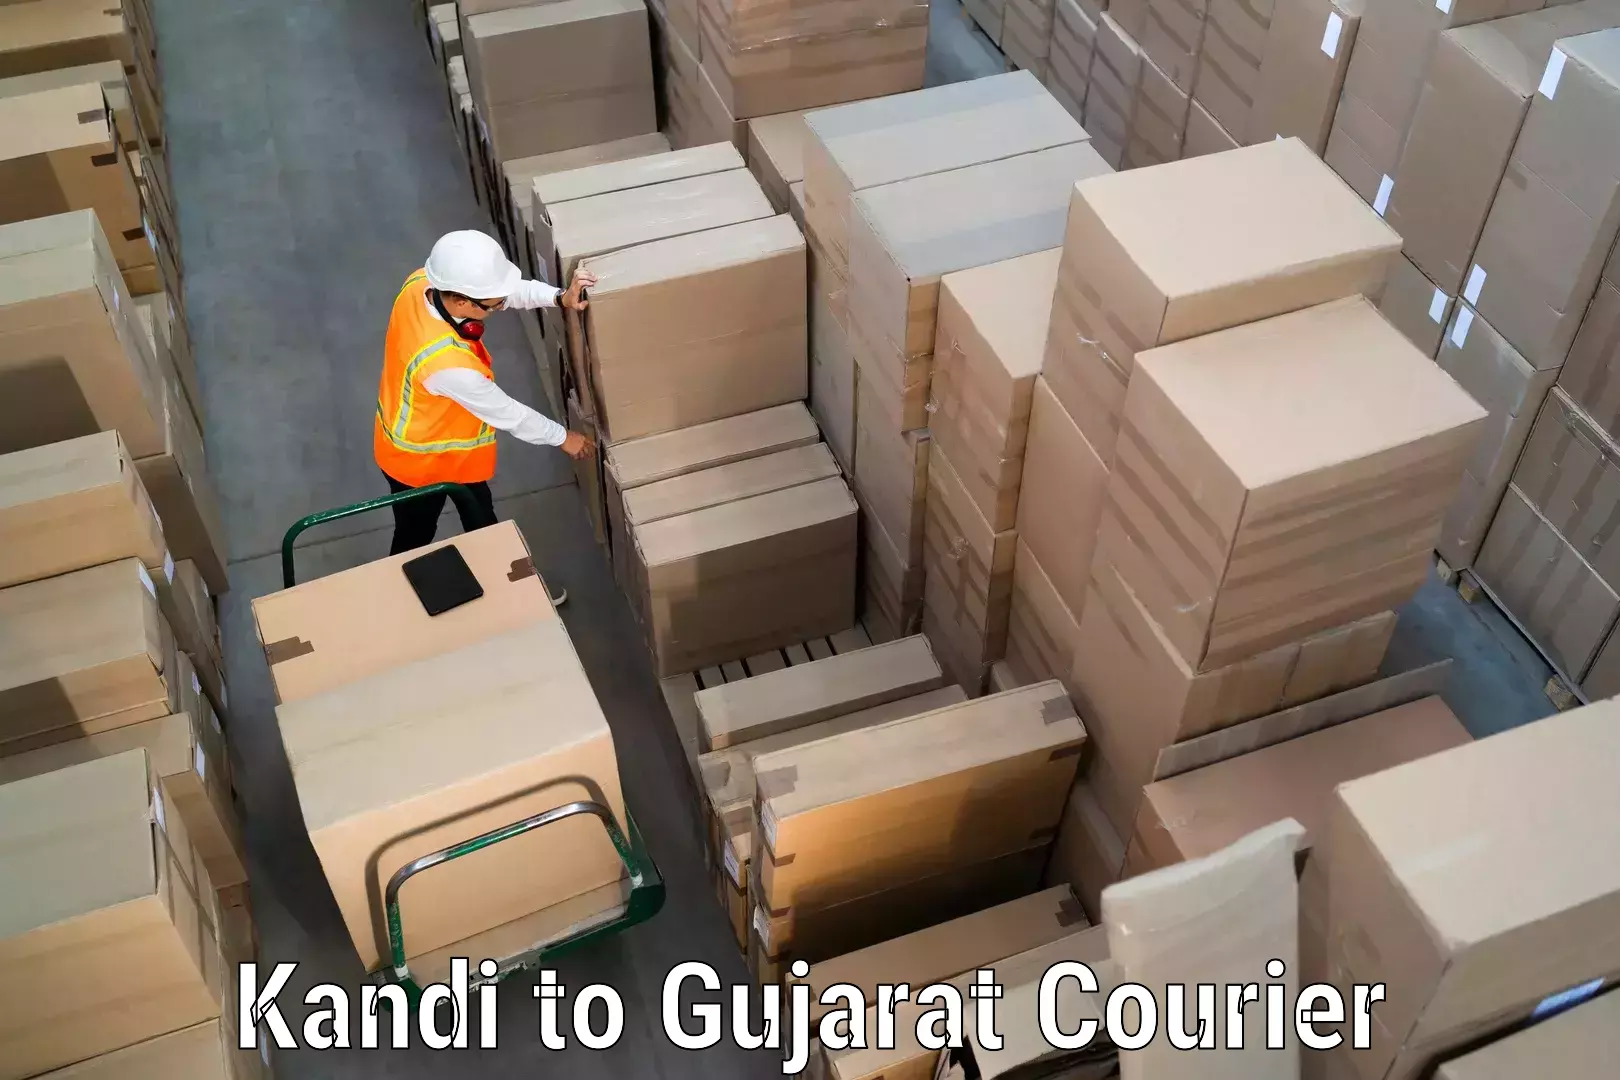 Pharmaceutical courier Kandi to Kodinar